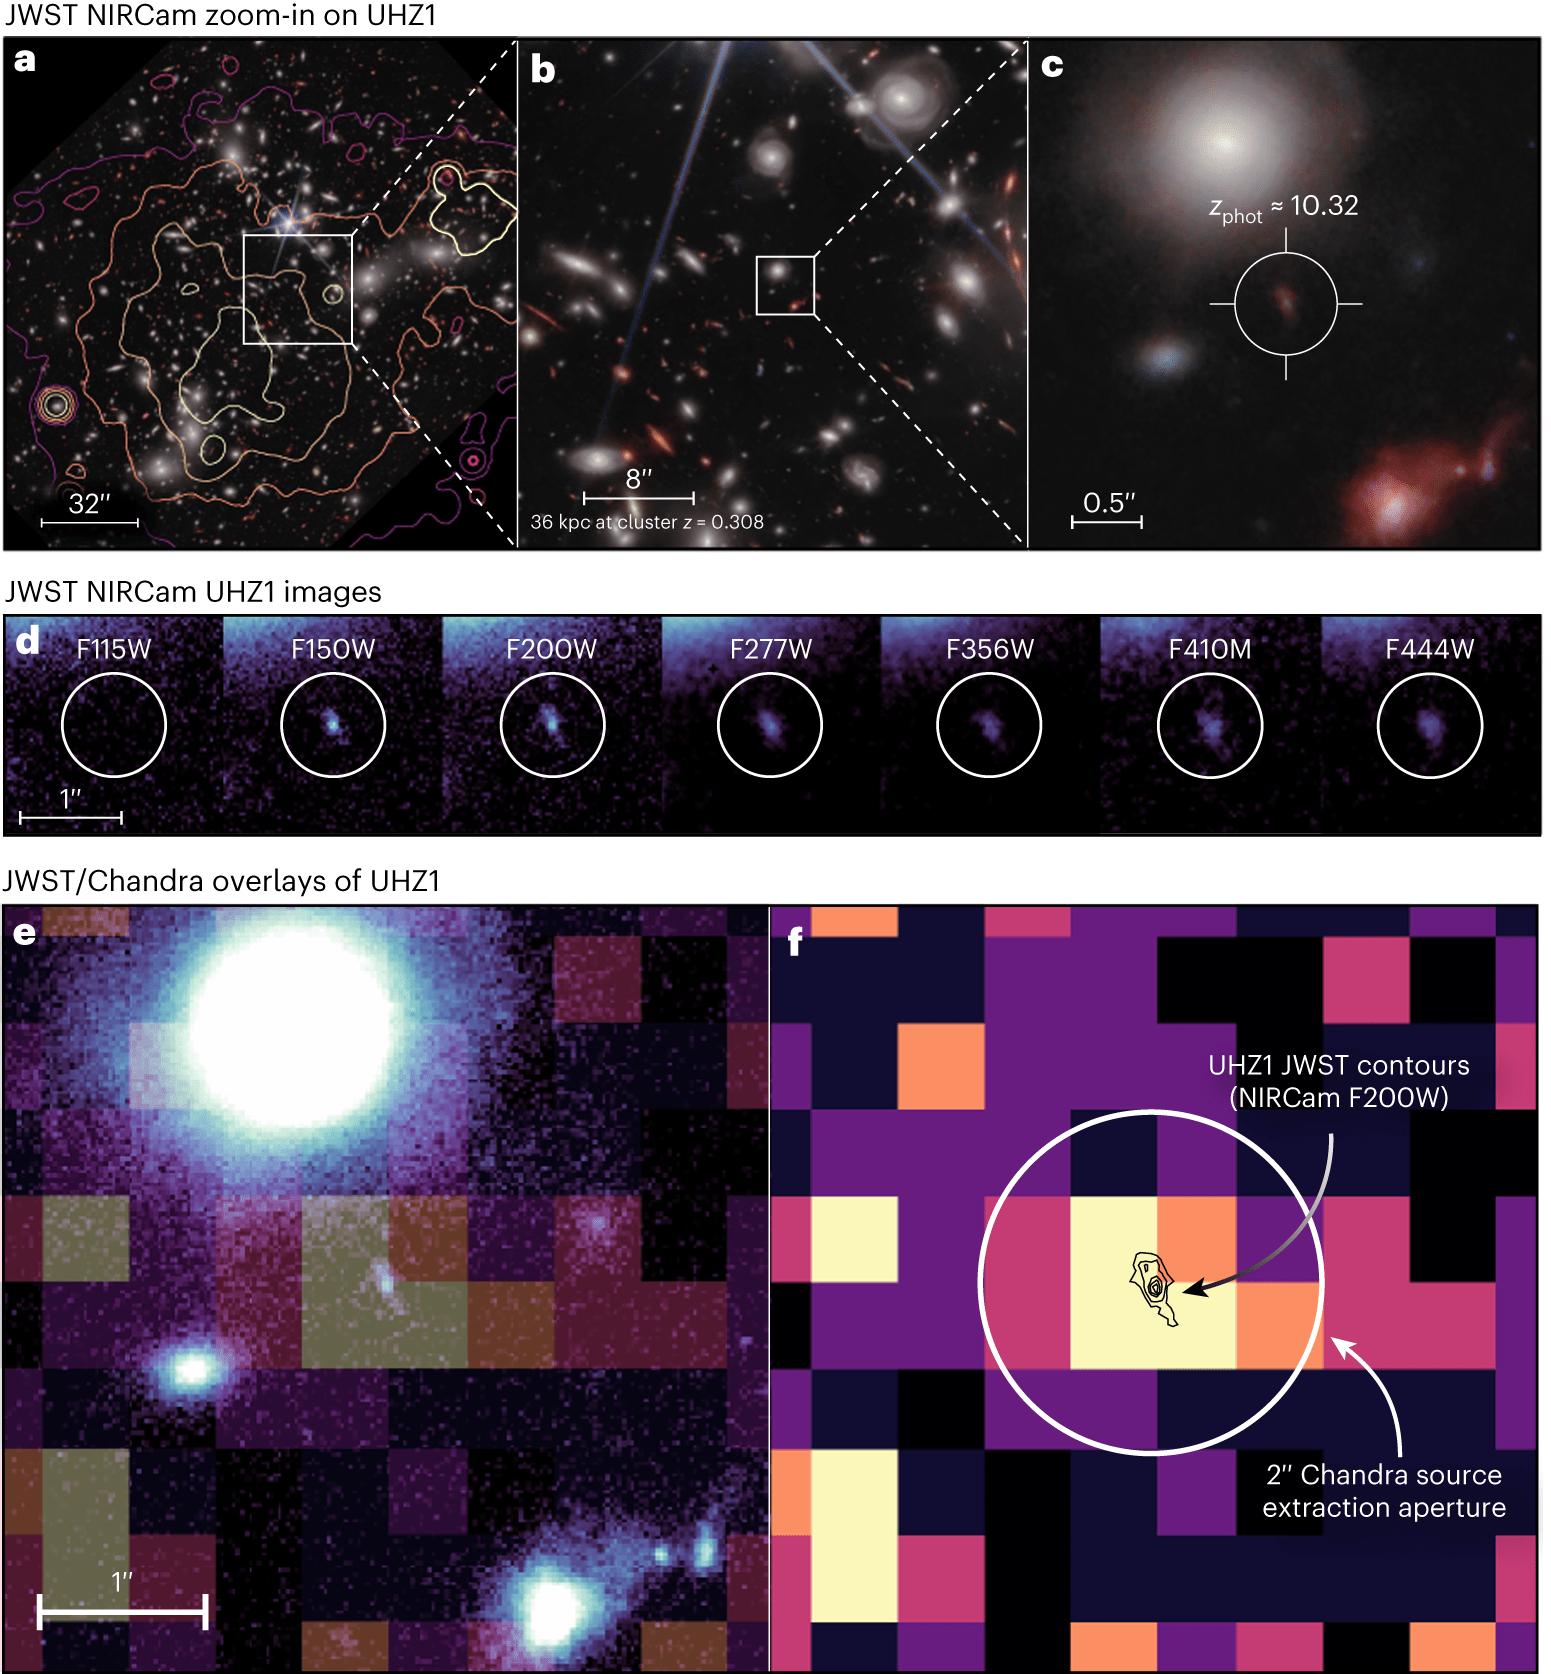 Обнаружена рекордная сверхмассивная черная дыра